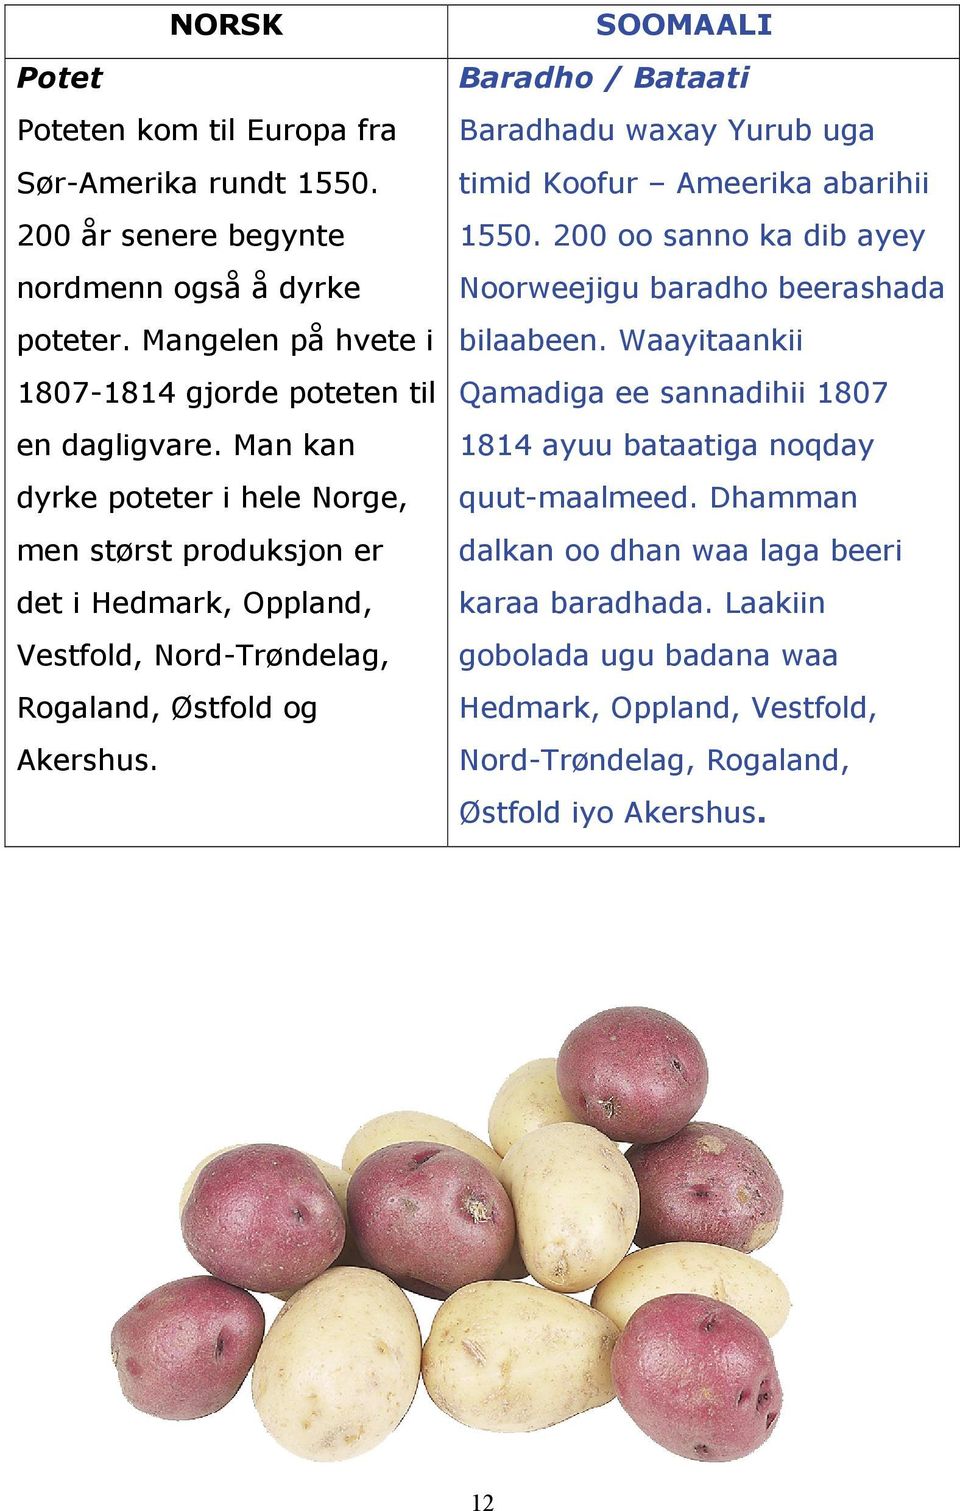 Waayitaankii 1807-1814 gjorde poteten til Qamadiga ee sannadihii 1807 en dagligvare. Man kan 1814 ayuu bataatiga noqday dyrke poteter i hele Norge, quut-maalmeed.